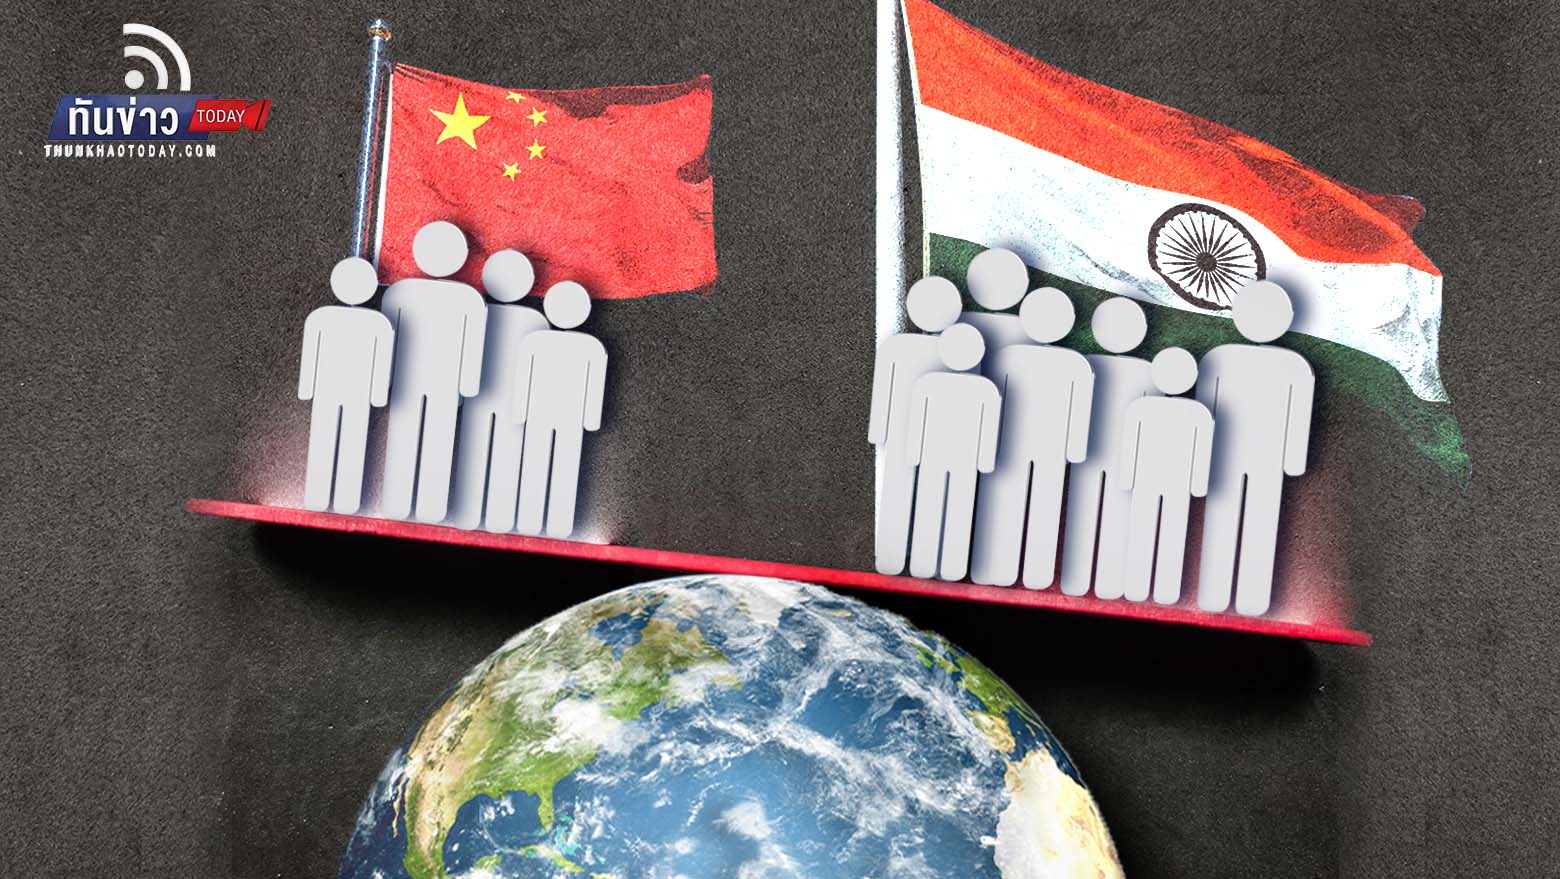 นักวิเคราะห์คาด “อินเดีย” ขึ้นแท่นประชากรมากที่สุดในโลกแซง “จีน” ไปแล้ว ใขขณะที่จีนประชากรลดลงในรอบหลายสิบปี